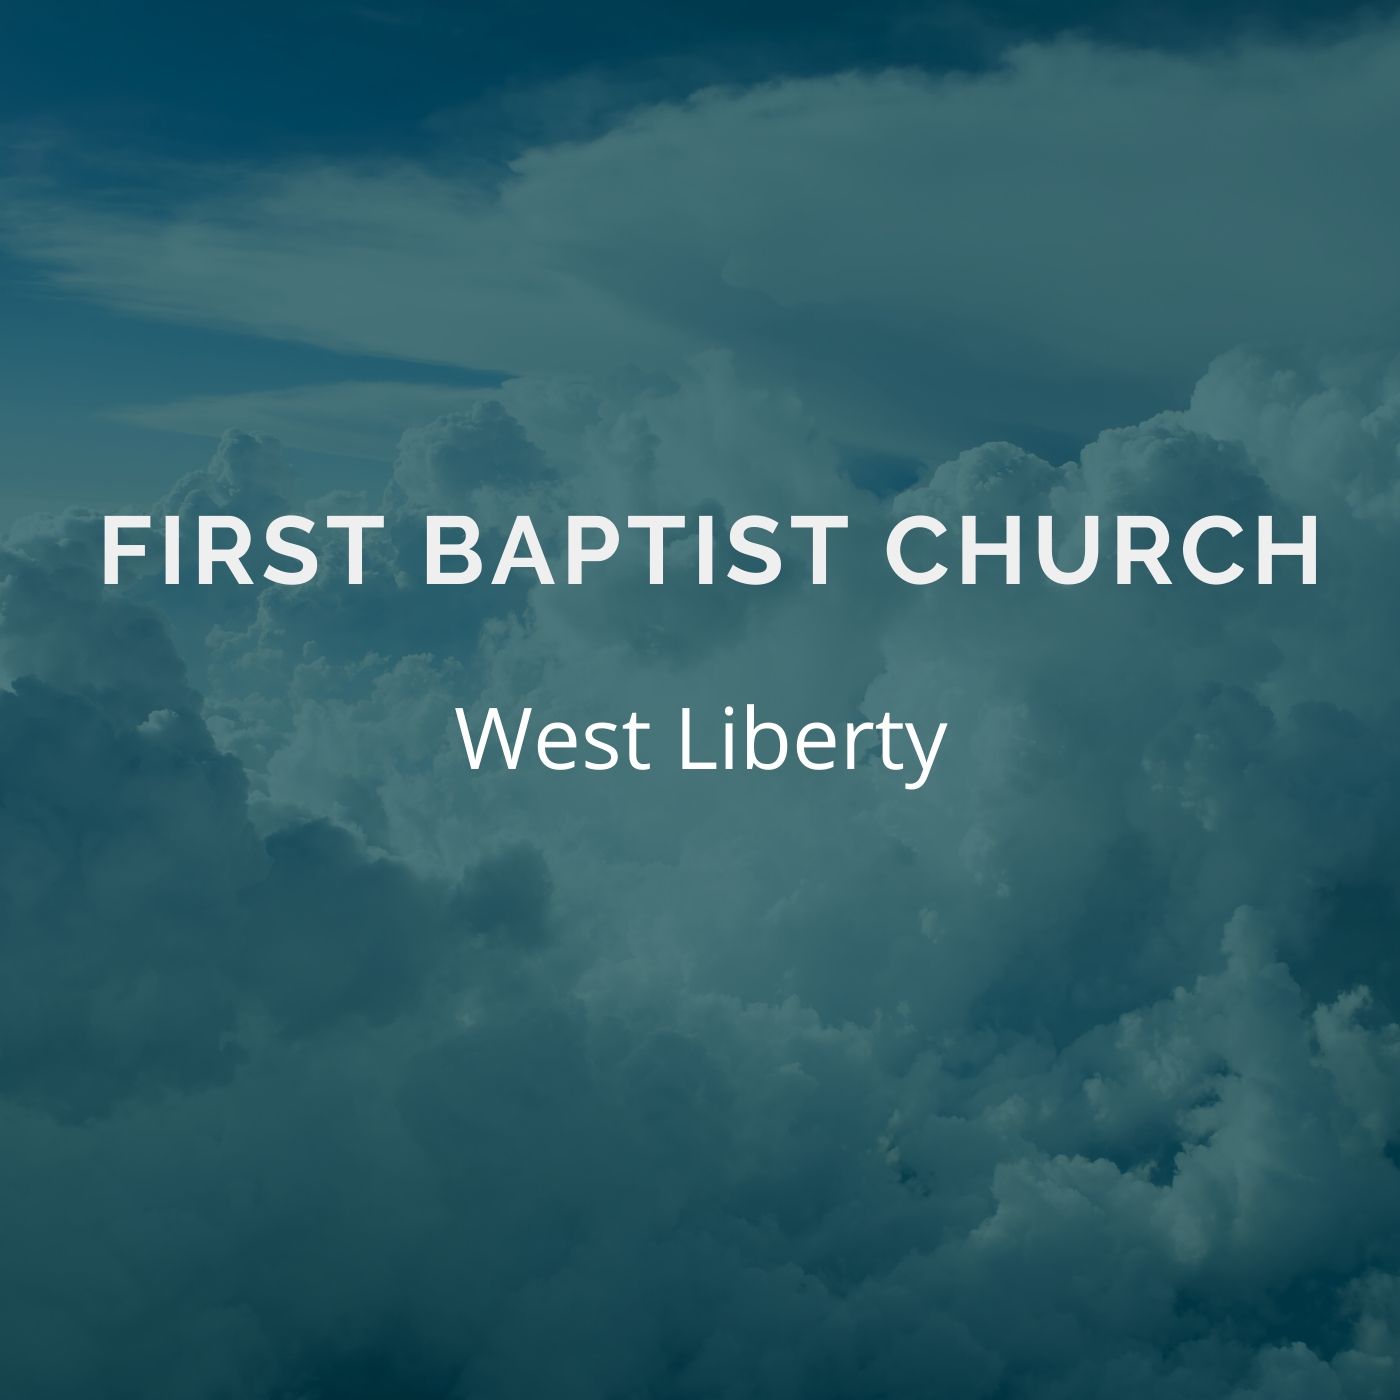 First Baptist Church West Liberty